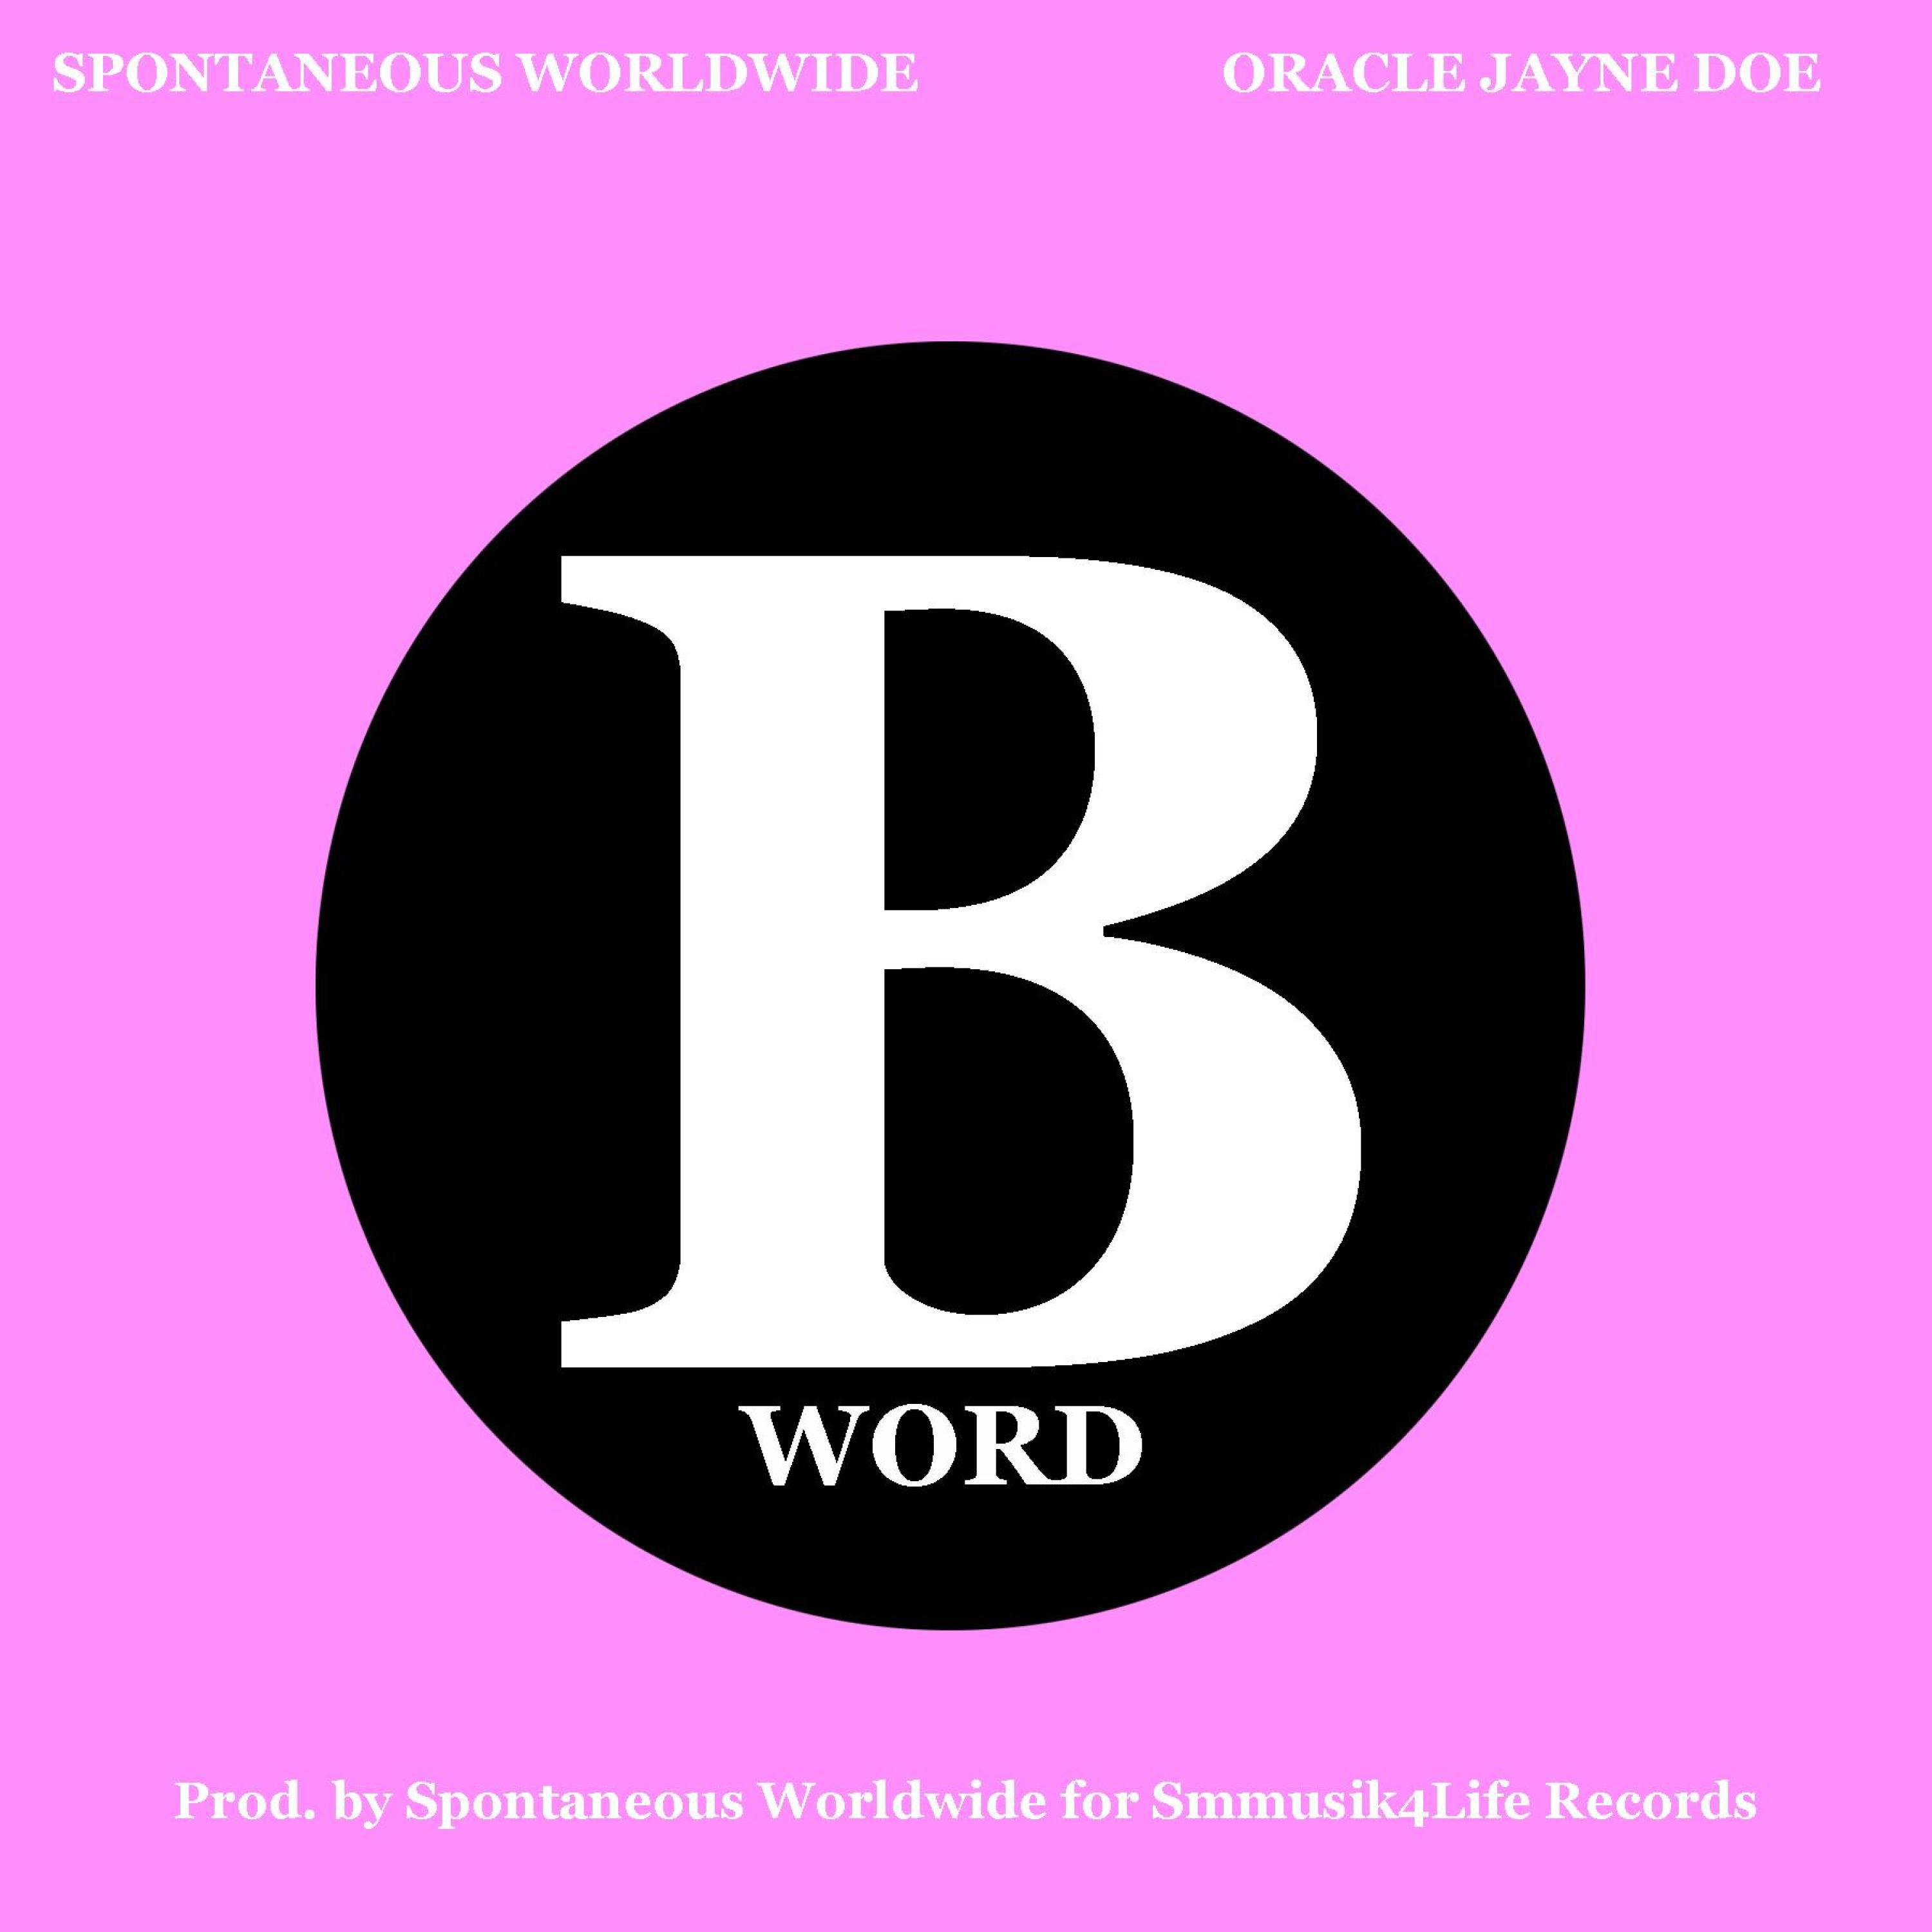 Spontaneous Worldwide - B WORD (feat. Oracle Jayne Doe)